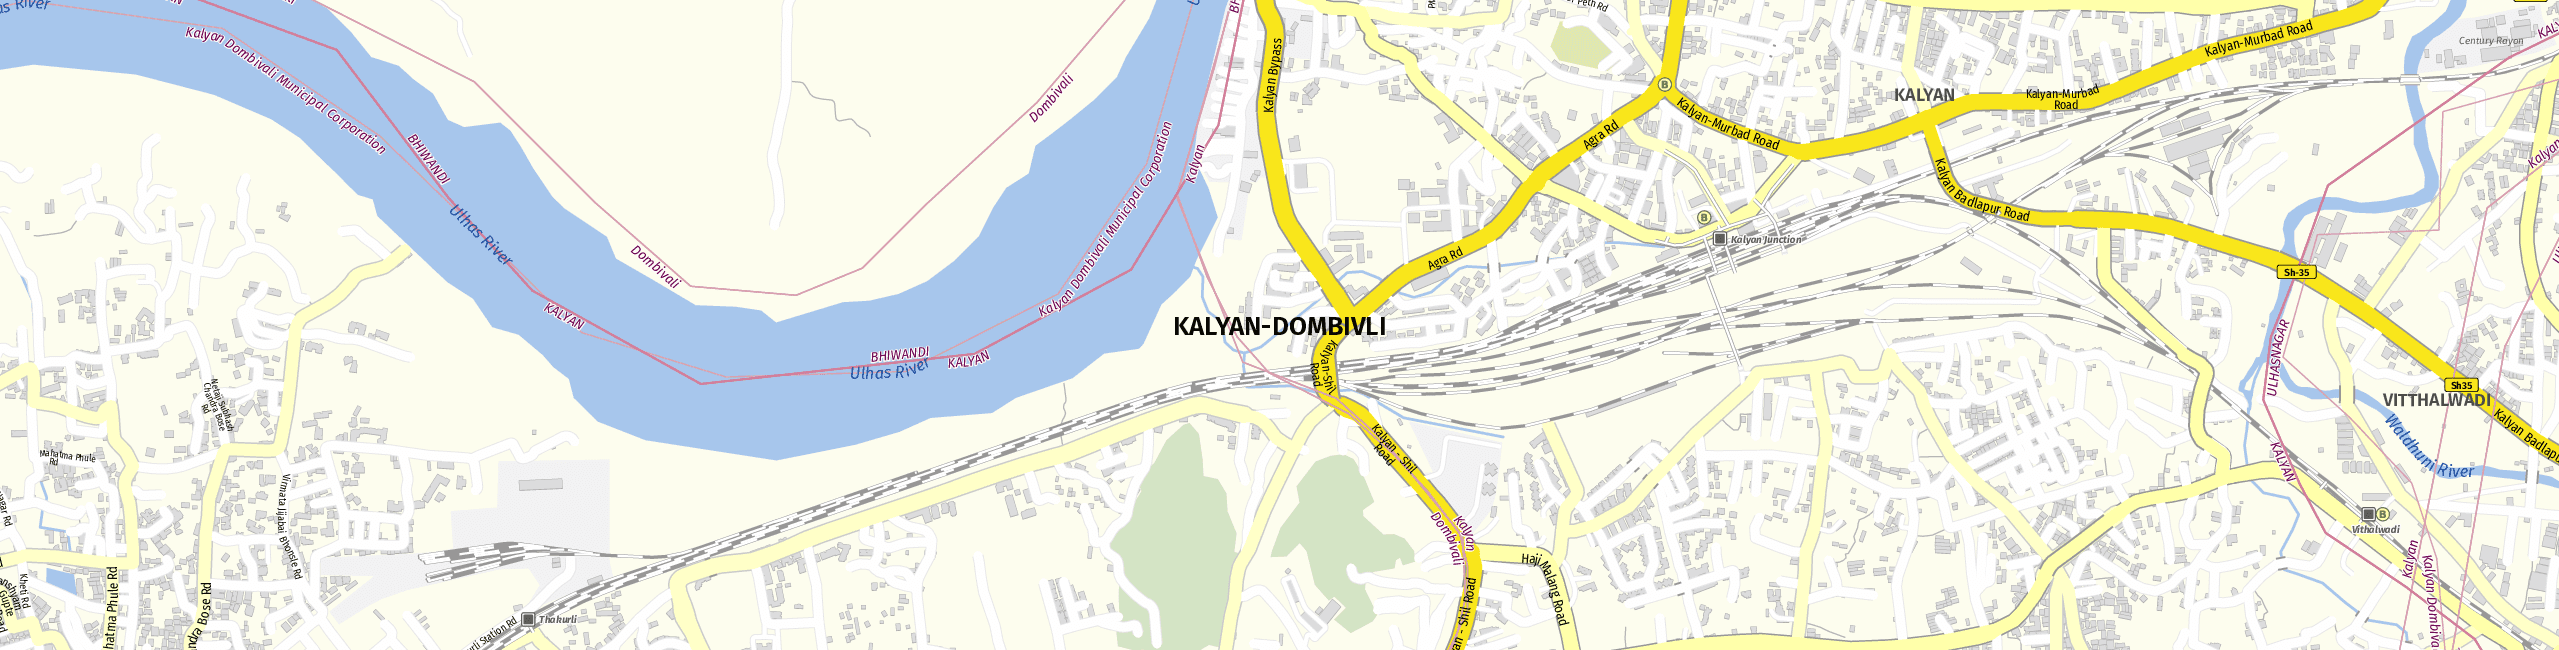 Stadtplan Kalyan-Dombivli zum Downloaden.